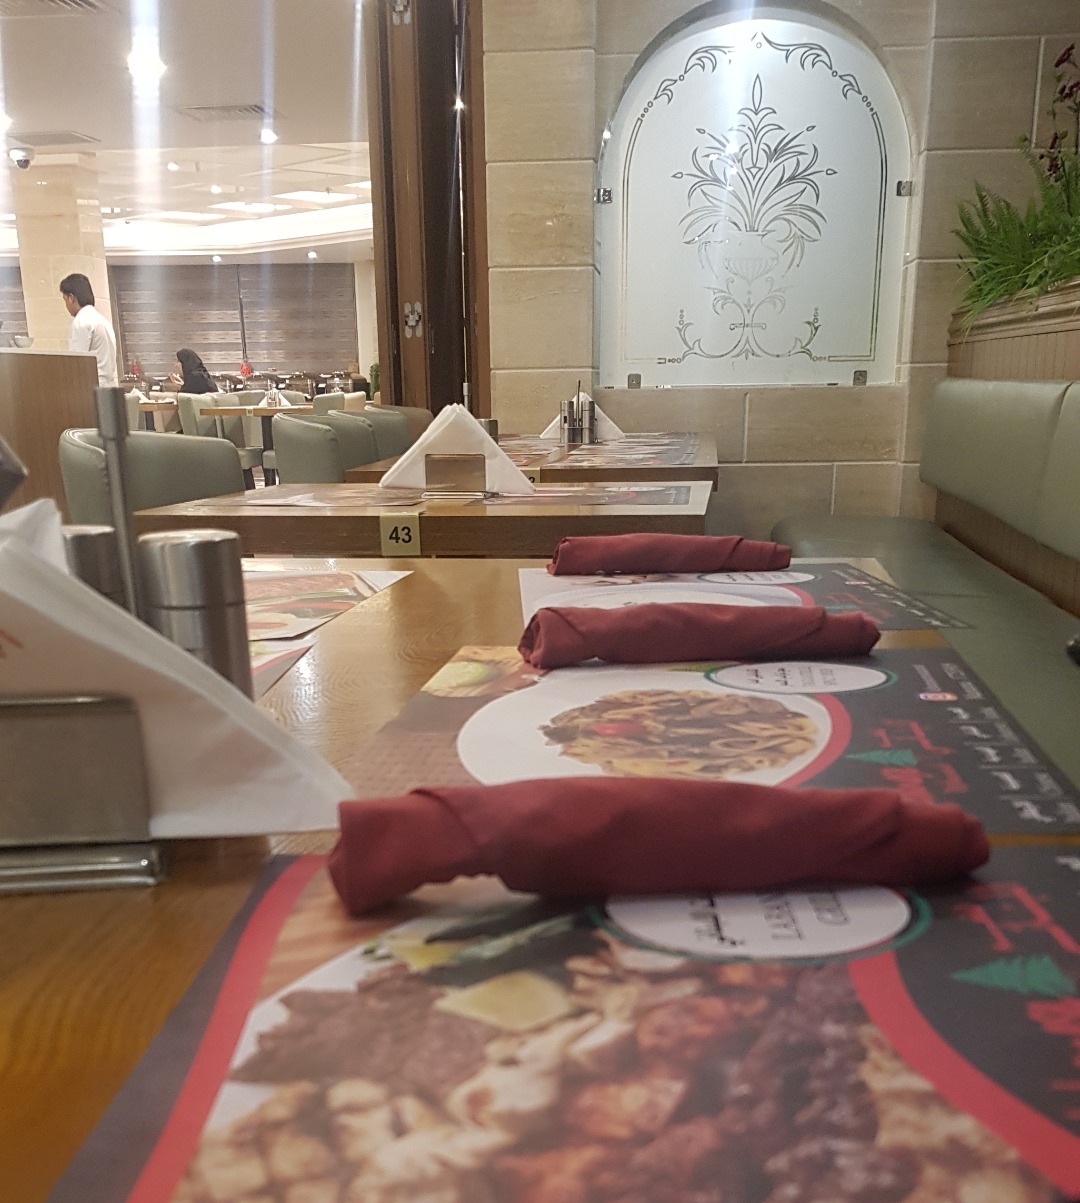 المطعم اللبناني - البحرين